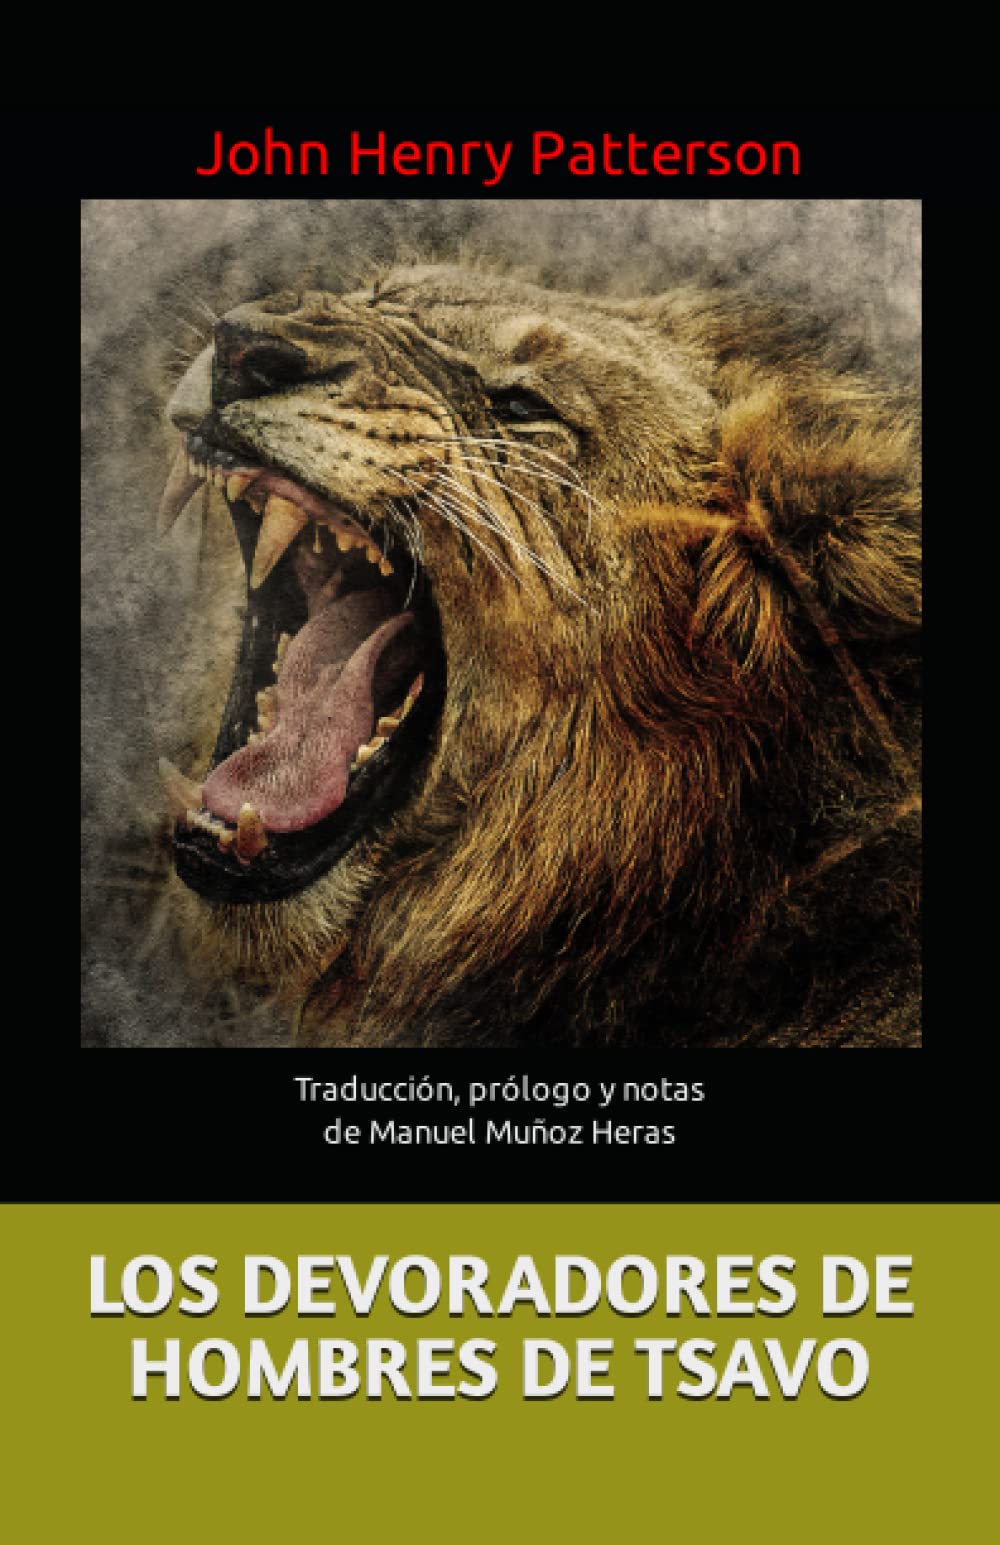 LOS DEVORADORES DE HOMBRES DE TSAVO: Traducción, prólogo y notas de Manuel Muñoz Heras (Spanish Edition)